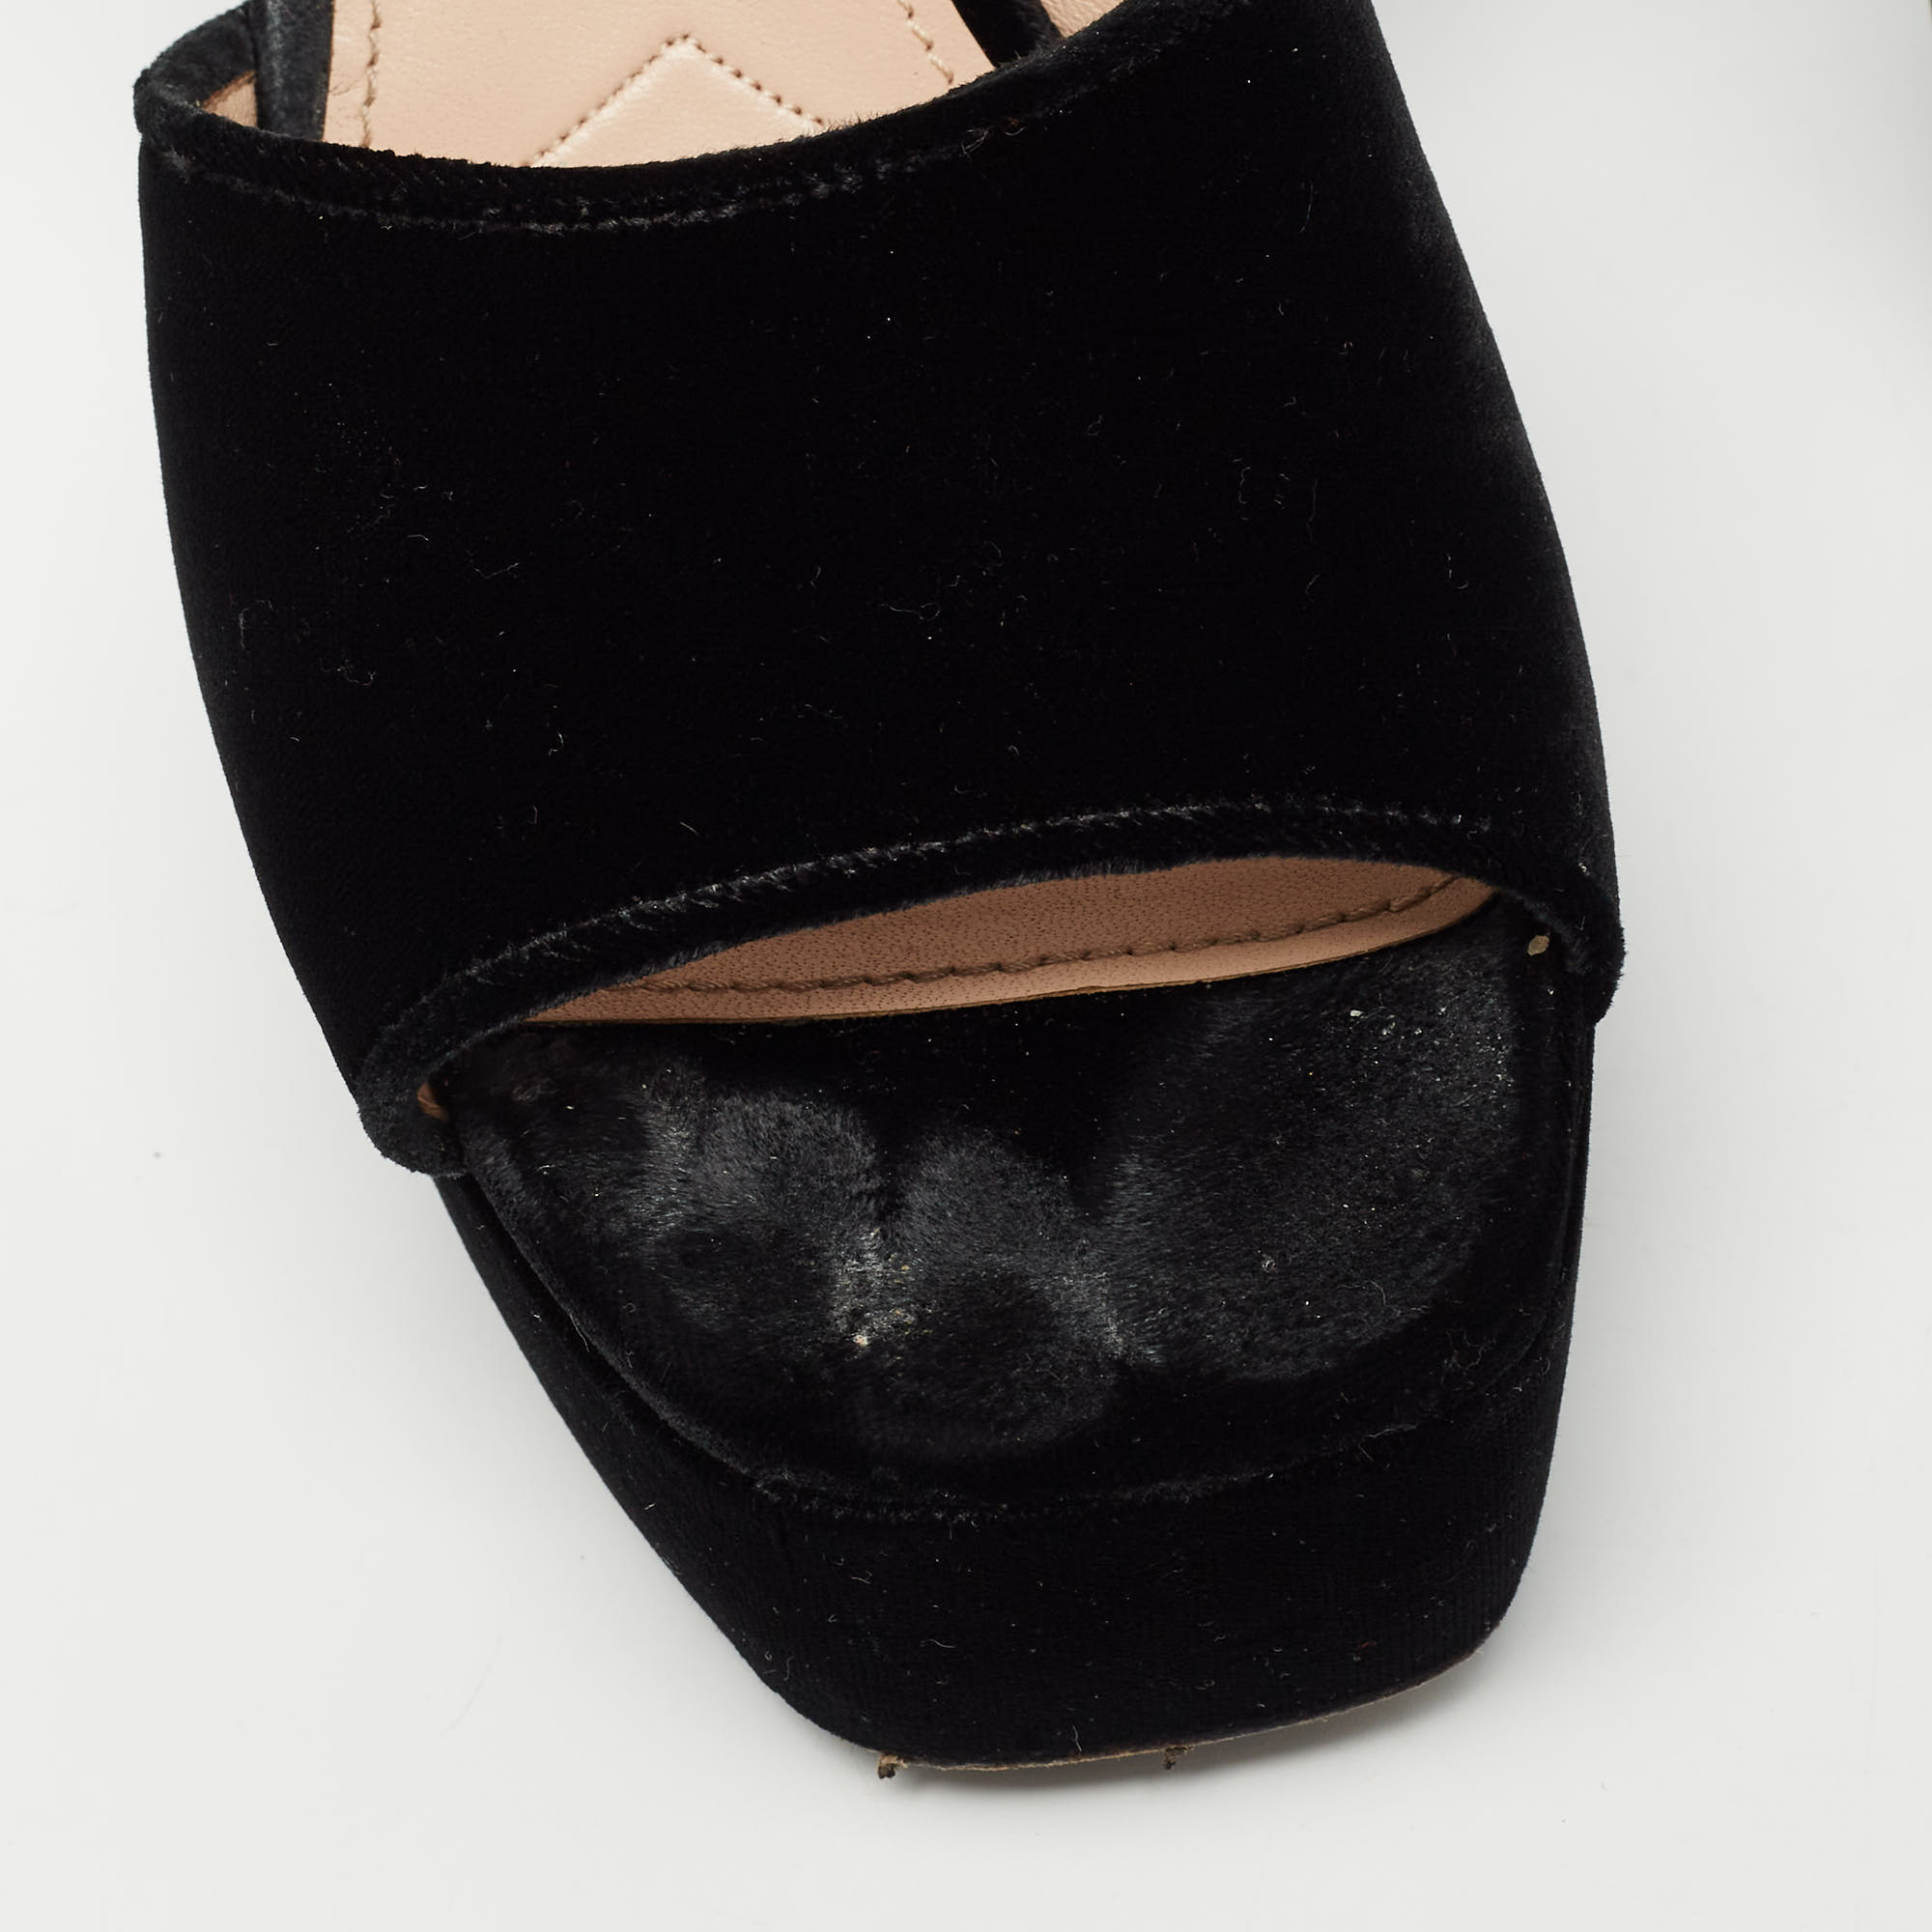 Miu Miu Black Suede Crystal Embellished Heel Ankle Strap Platform Sandals Size 39